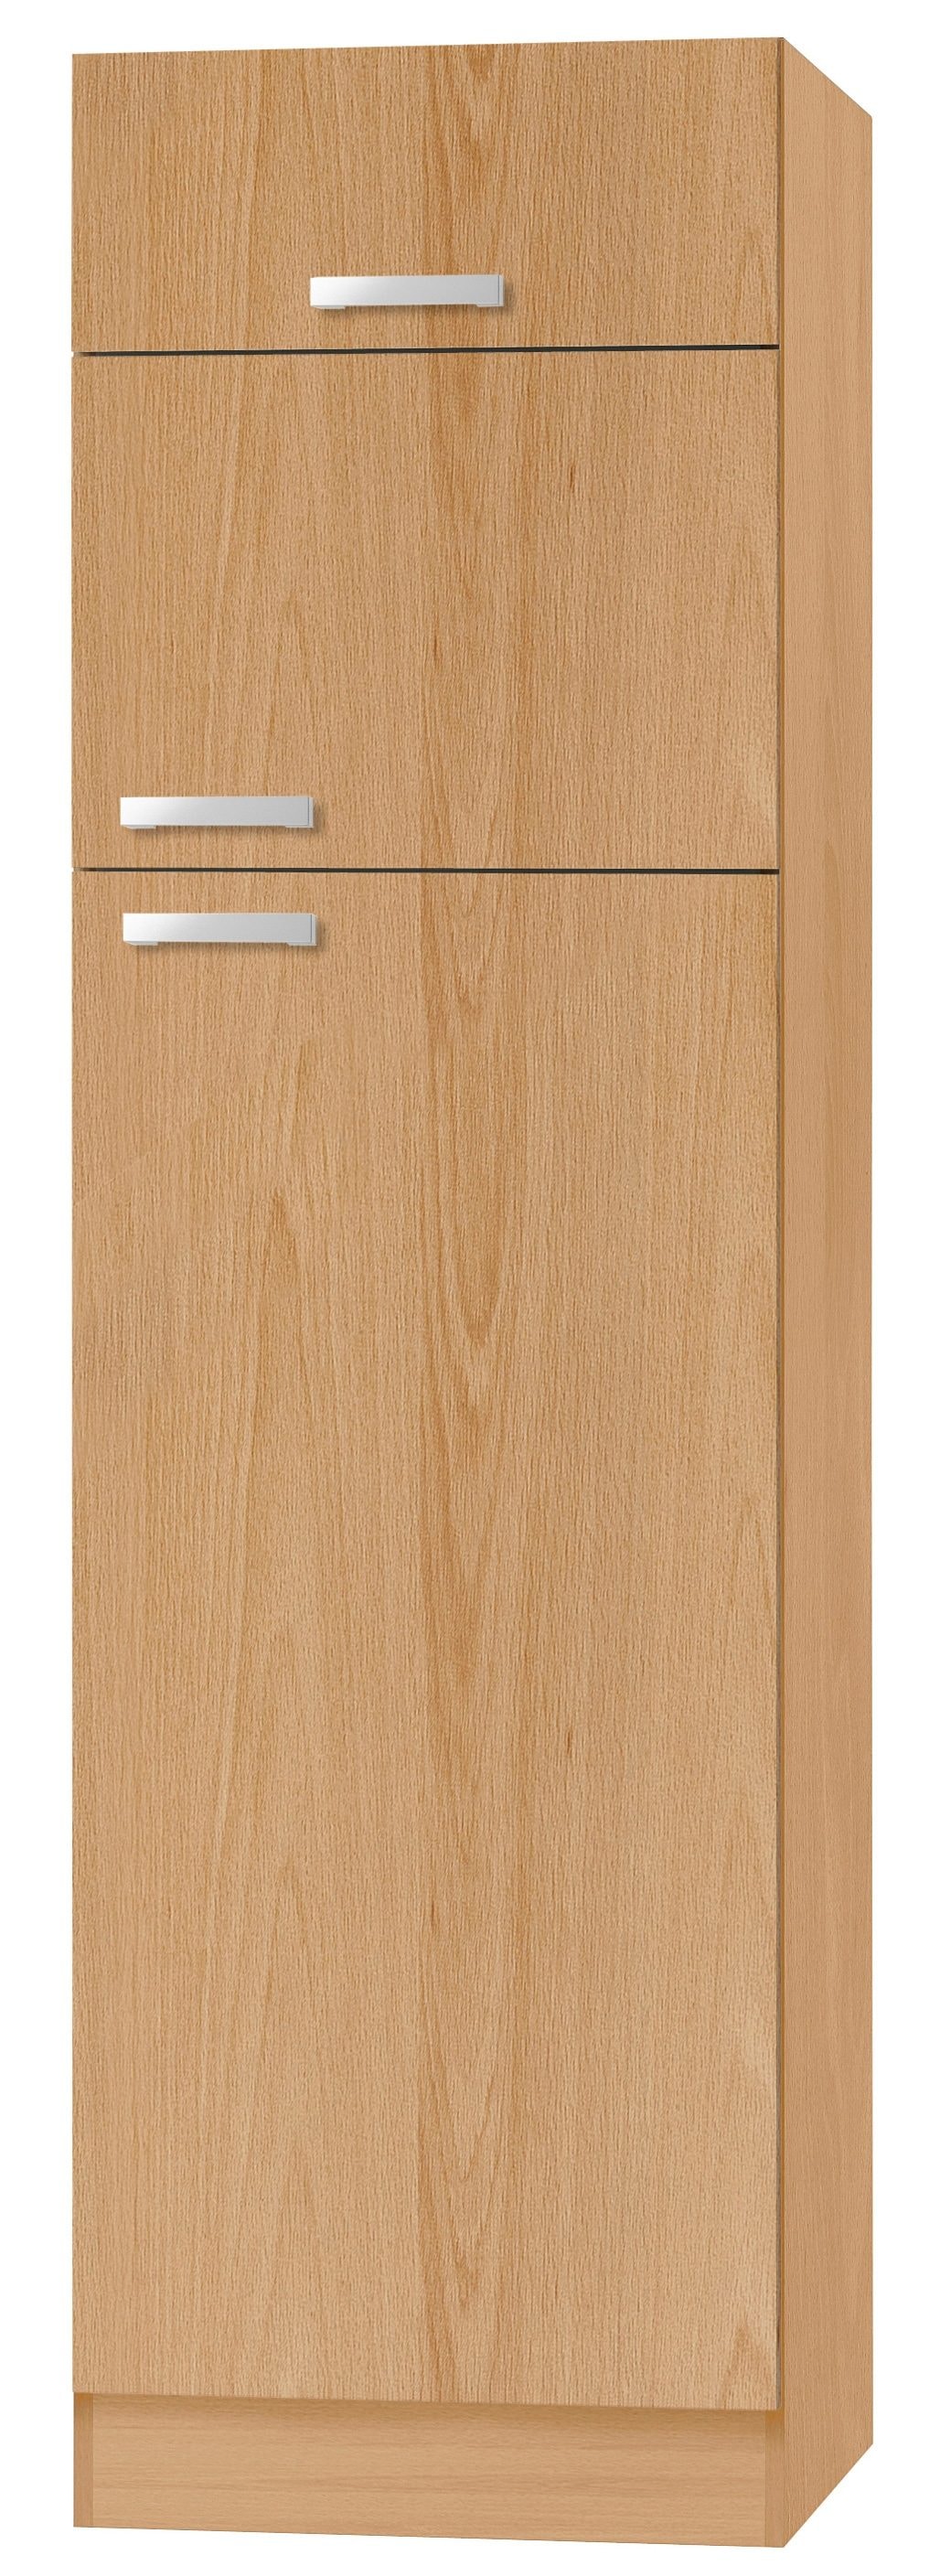 OPTIFIT Kühlumbauschrank »Odense«, 60 cm breit, 207 cm hoch, für Kühlgefrierkombinationen maß 144 cm